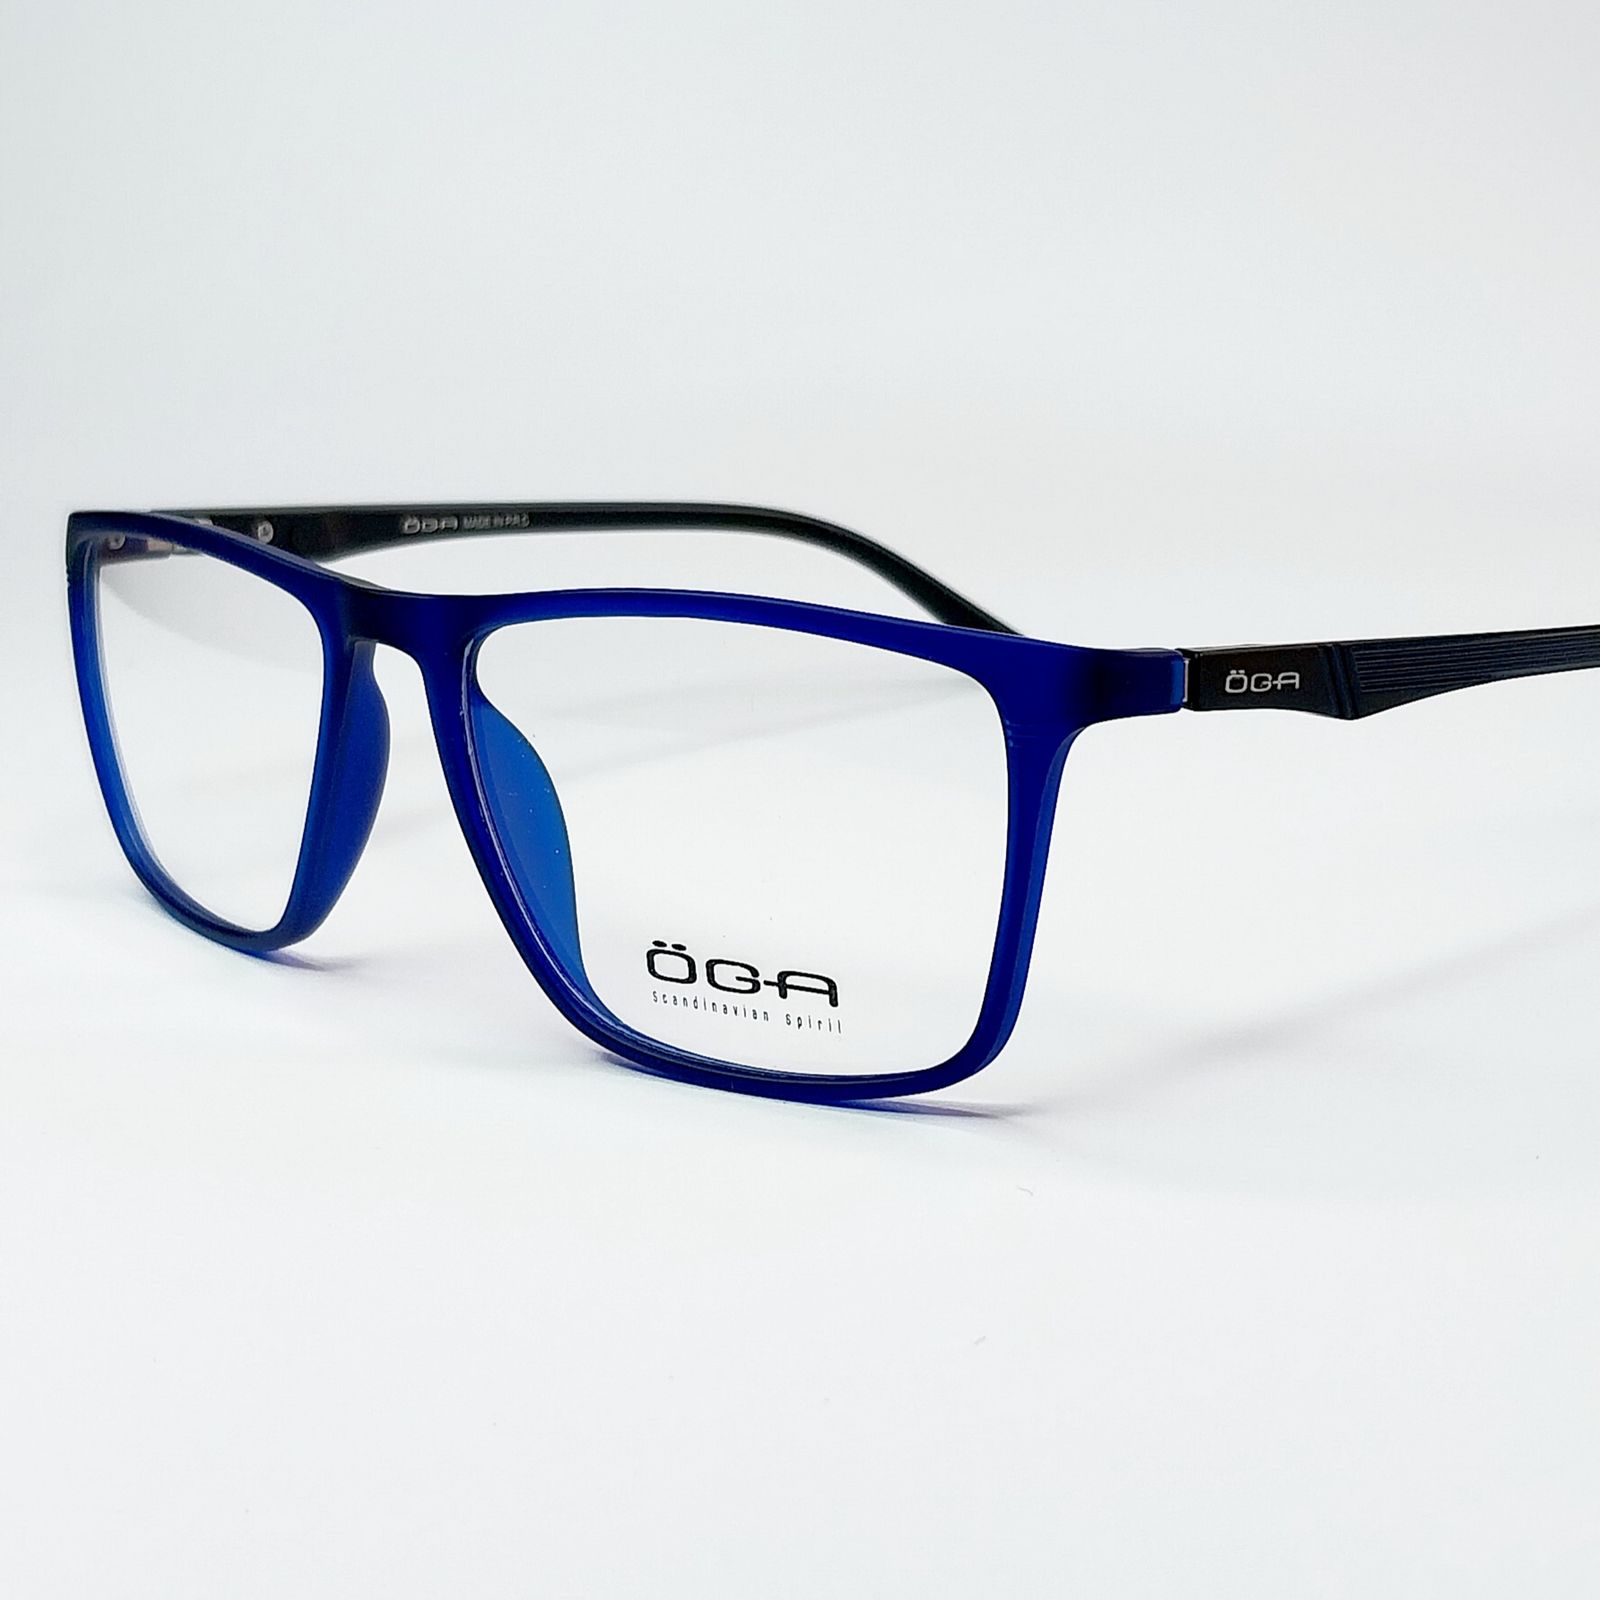 فریم عینک طبی اوگا مدل 3380 -  - 3